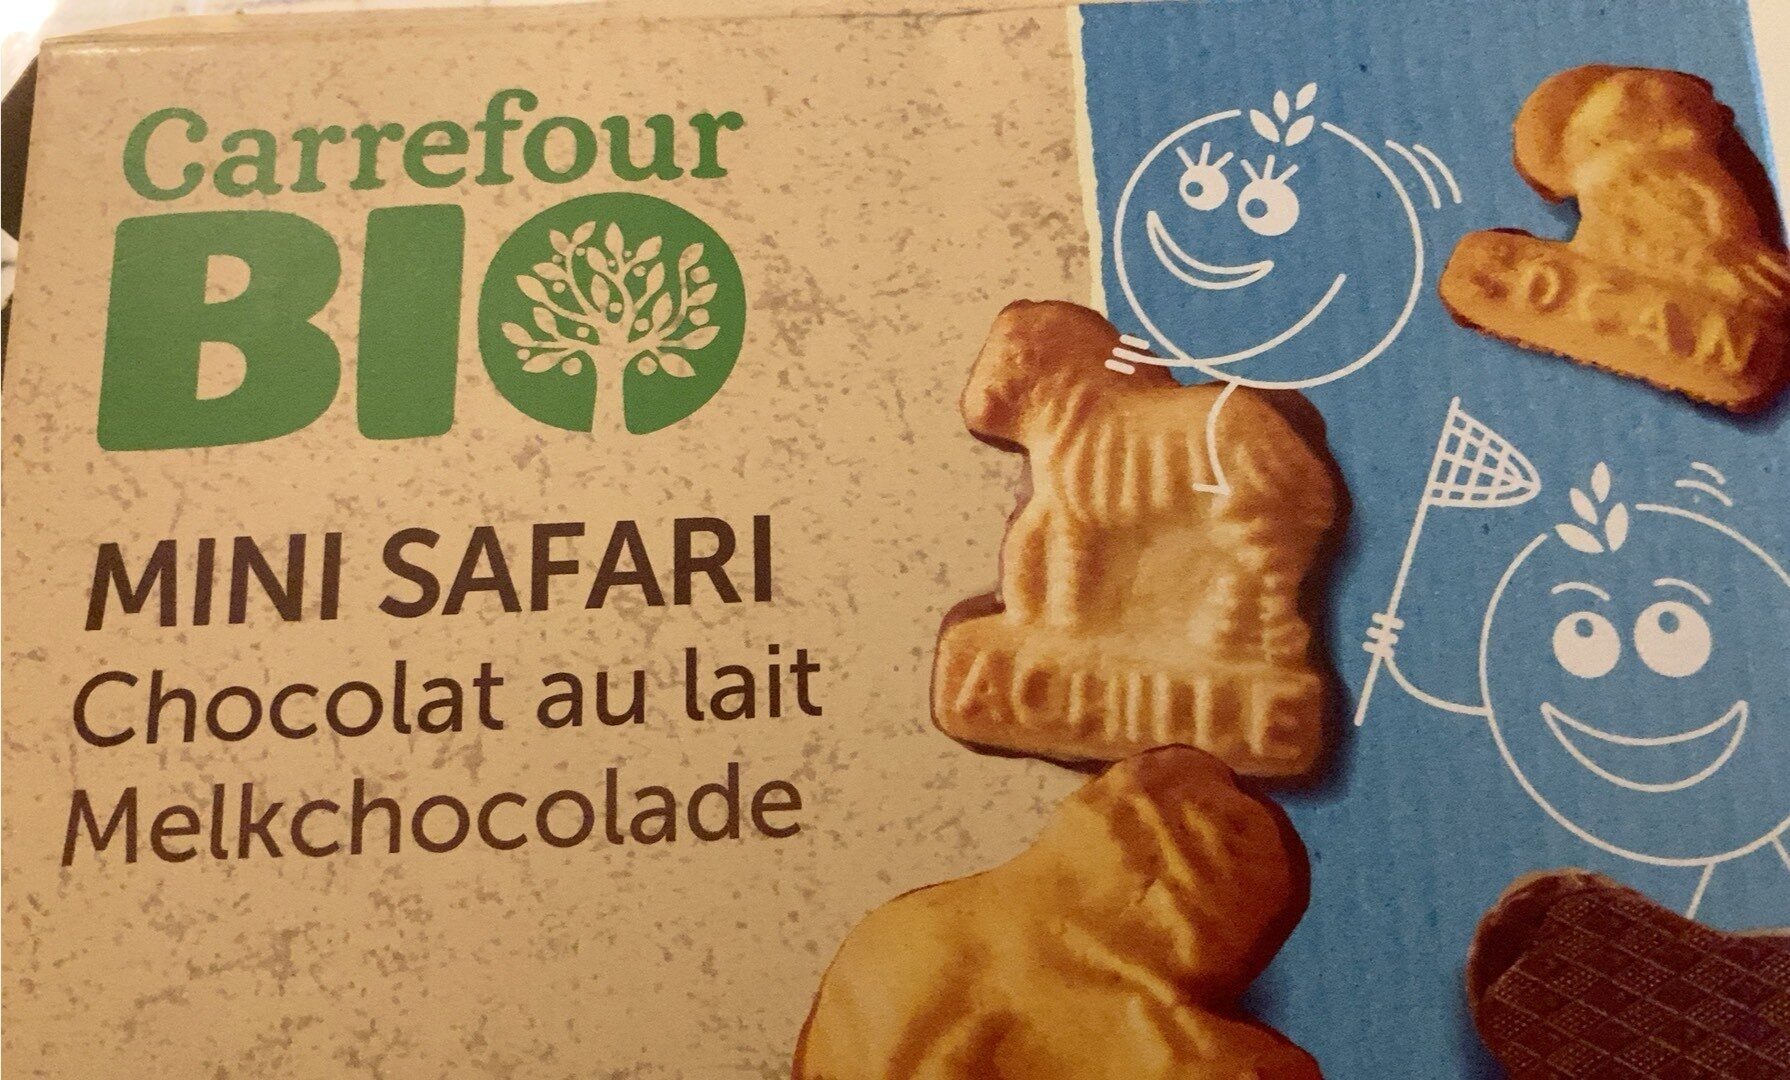 Mini Safari chocolat au lait - Produit